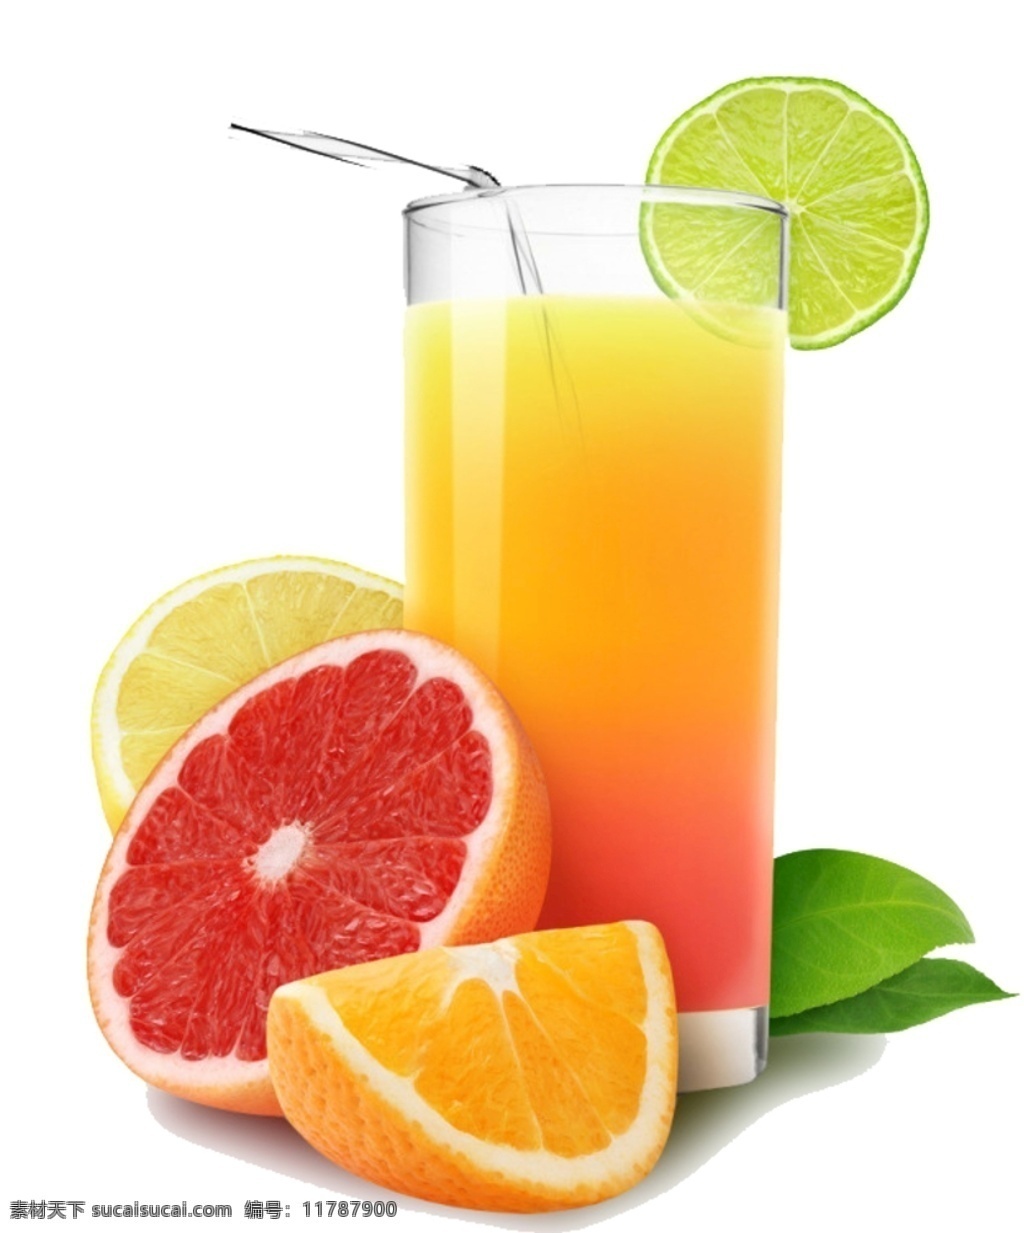 橙汁 橙子 橘子 橘子汁 金桔汁 金桔 柠檬 柠檬汁 新鲜水果 果汁 水果素材 北大青鸟 分层